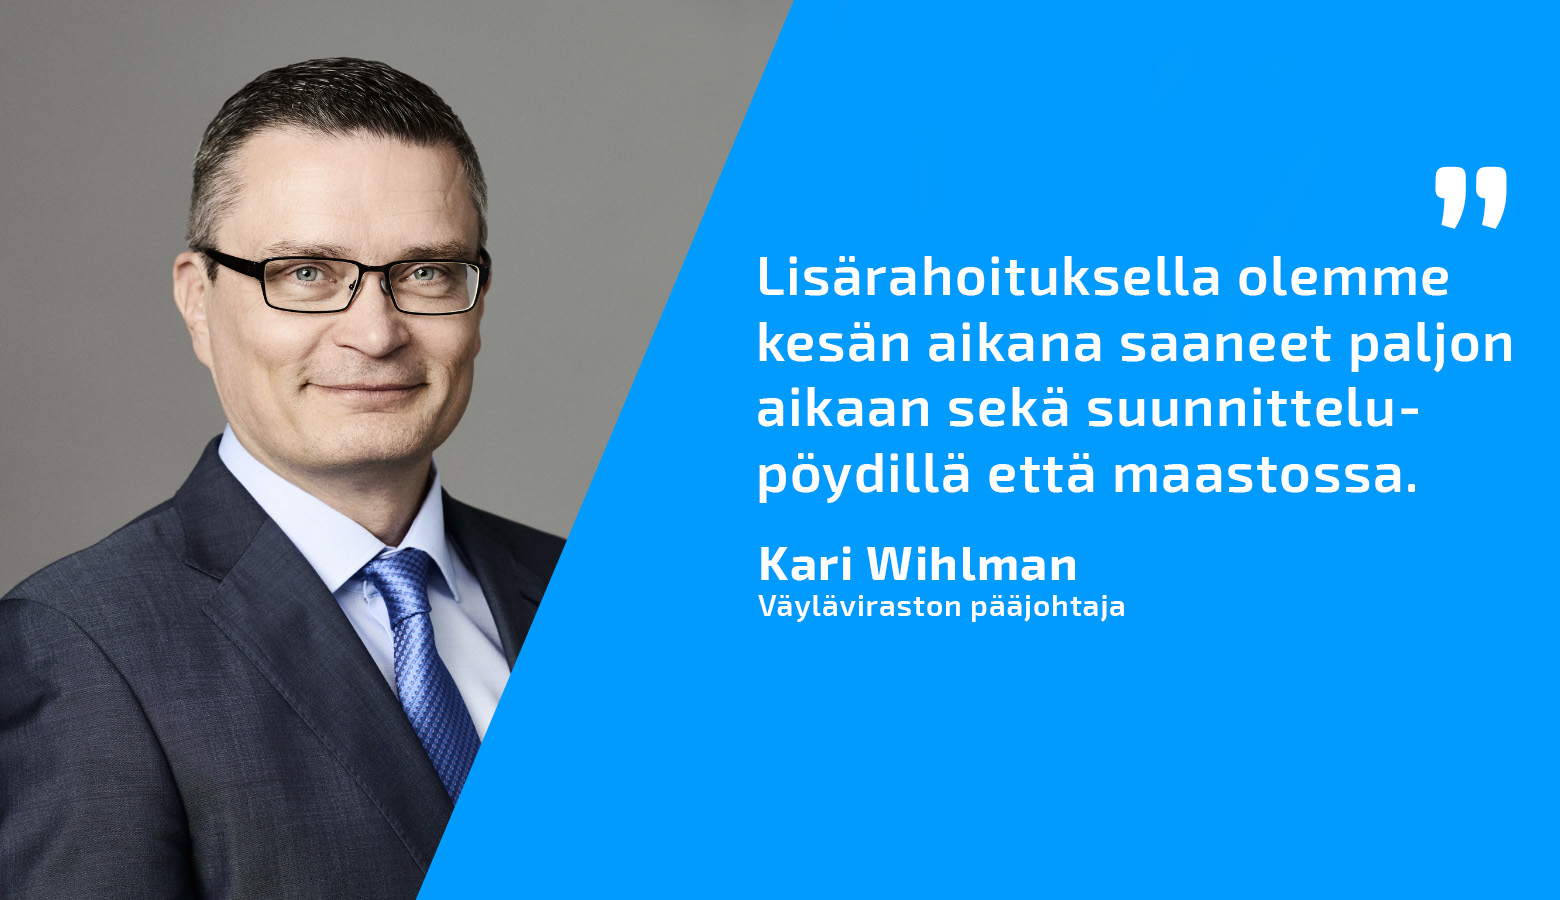 Väyläviraston pääjohtaja Kari Wihlman ja lainaus: Lisärahoituksella olemme kesän aikana saaneet paljon aikaan sekä suunnittelupöydillä että maastossa.